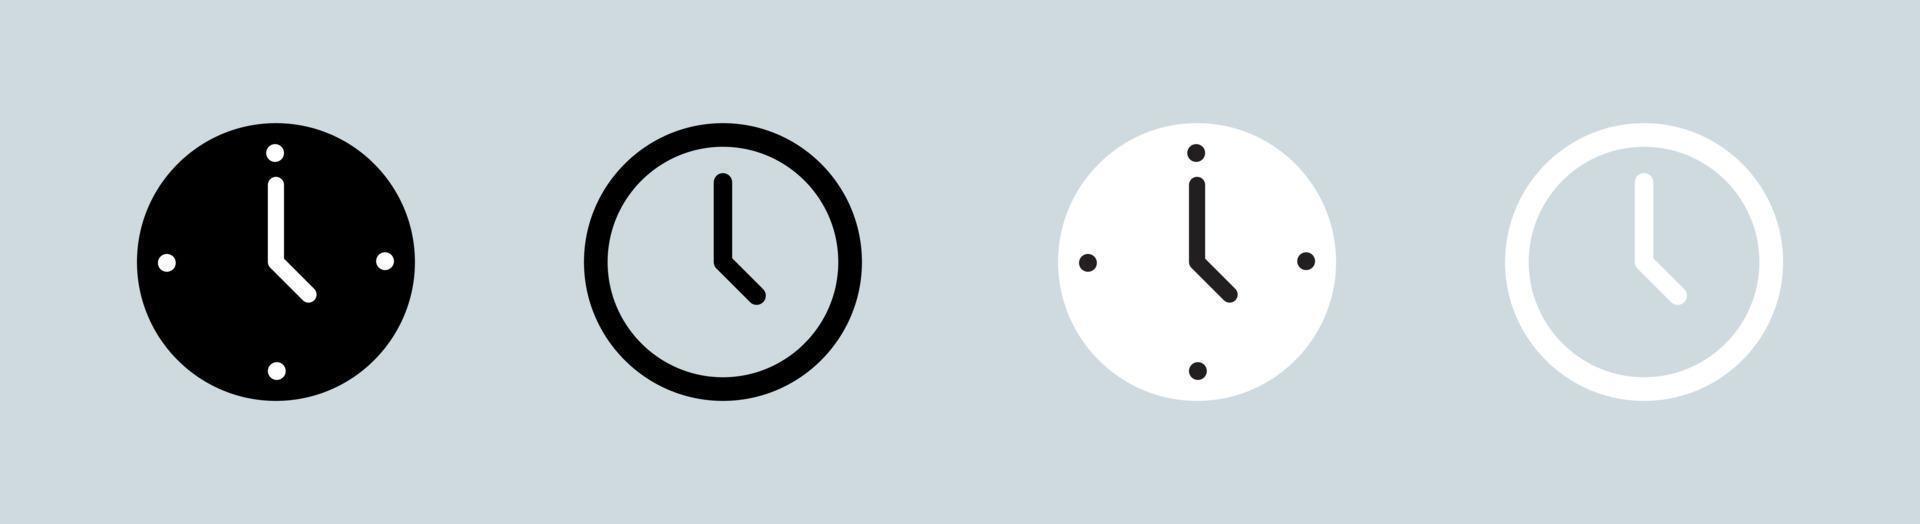 Uhrensymbol in Schwarz-Weiß-Farben. Satz von Symbolen für analoge Uhren. vektor